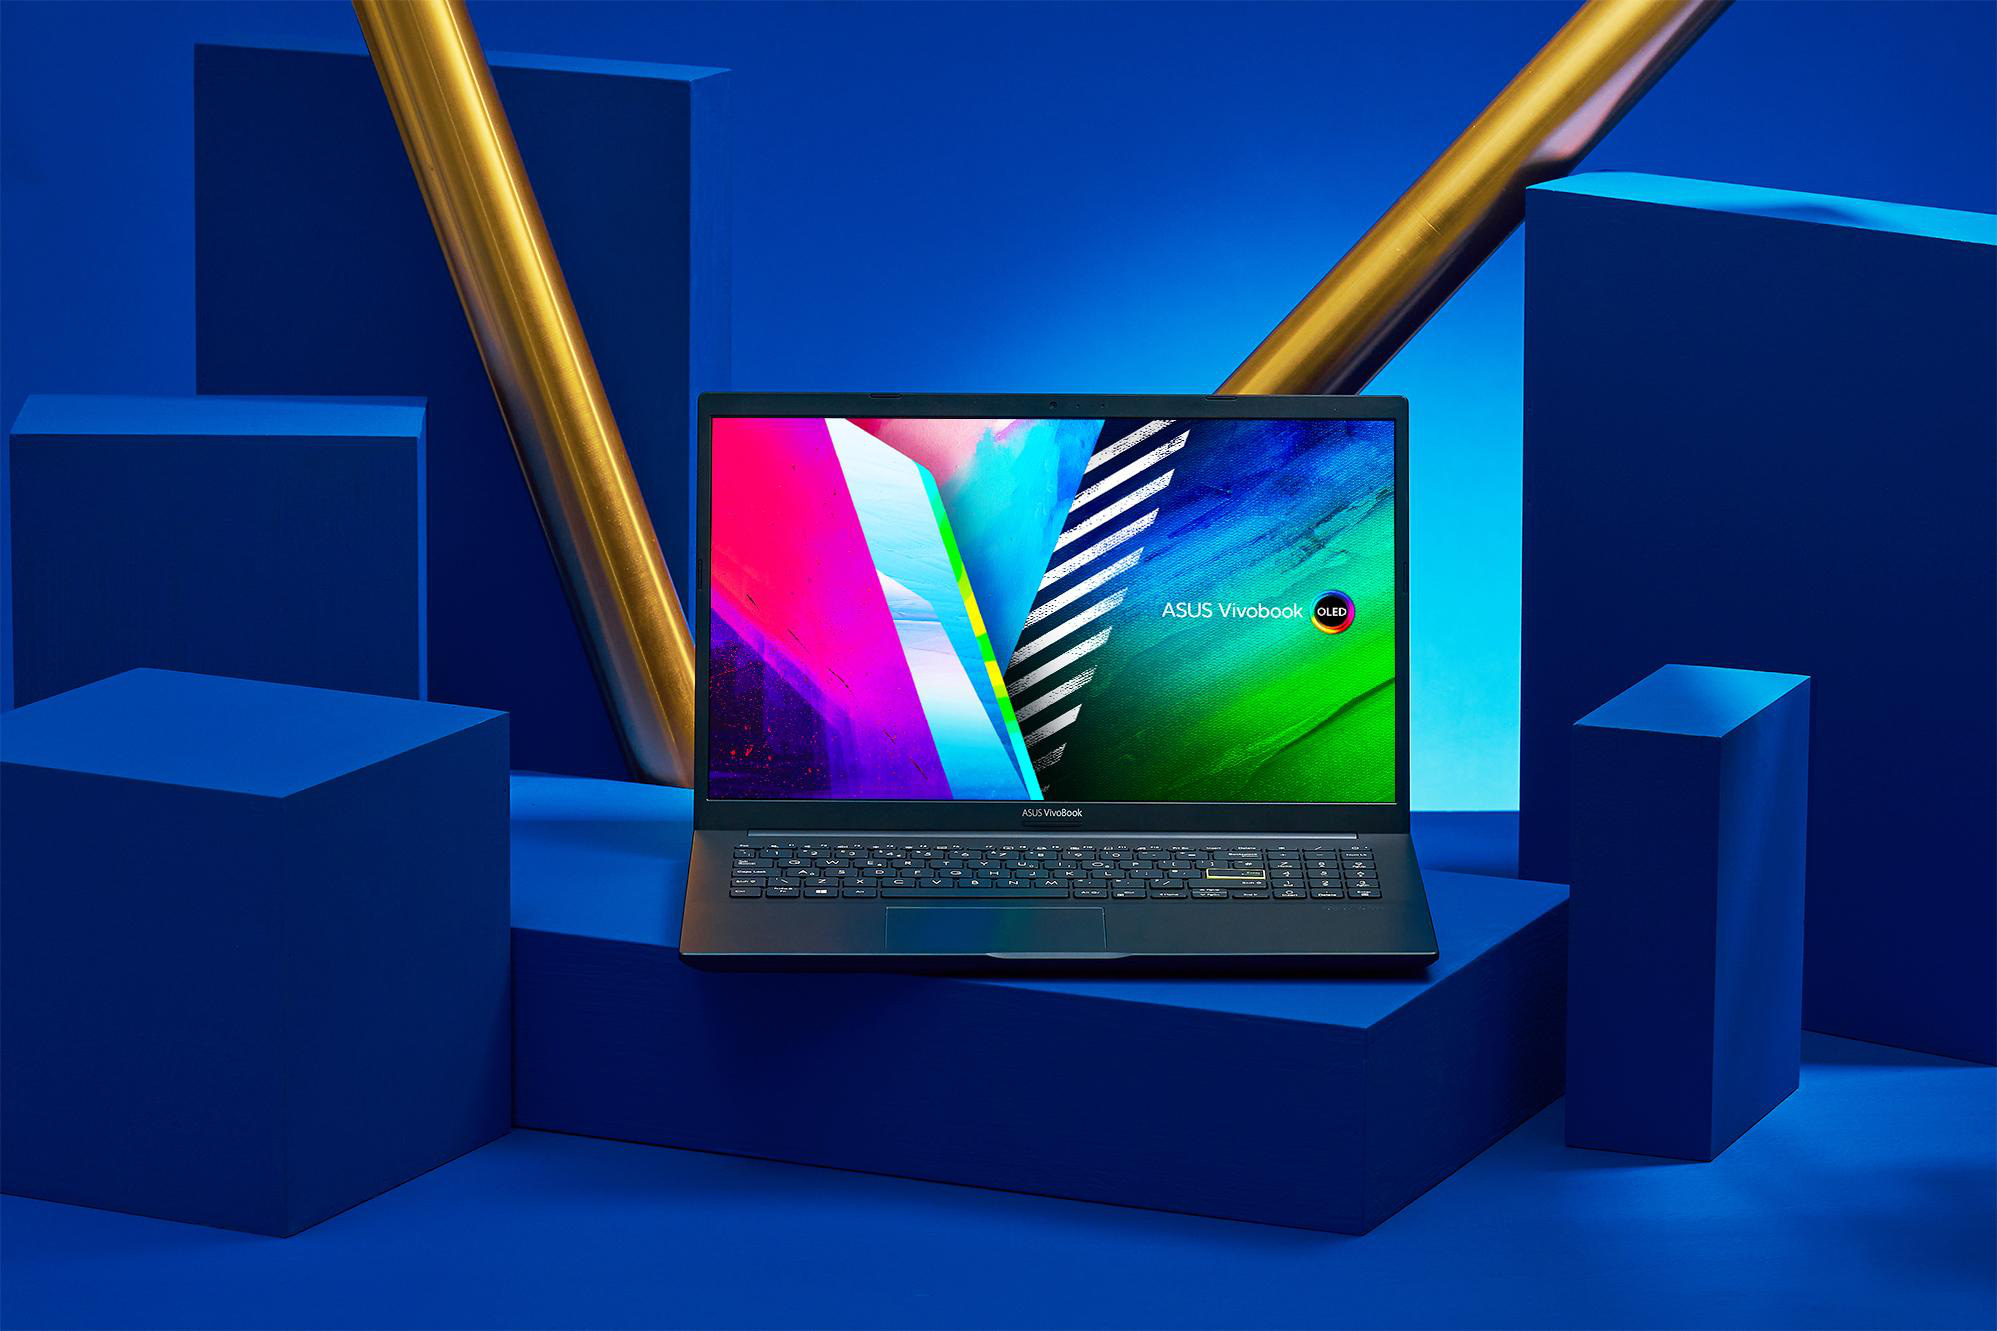 Laptop ASUS VivoBook OLED mang đến cho bạn một trải nghiệm tuyệt vời với màn hình OLED sắc nét và bộ vi xử lý mạnh mẽ. Hãy trải nghiệm sự khác biệt mà nó mang lại cho bạn.